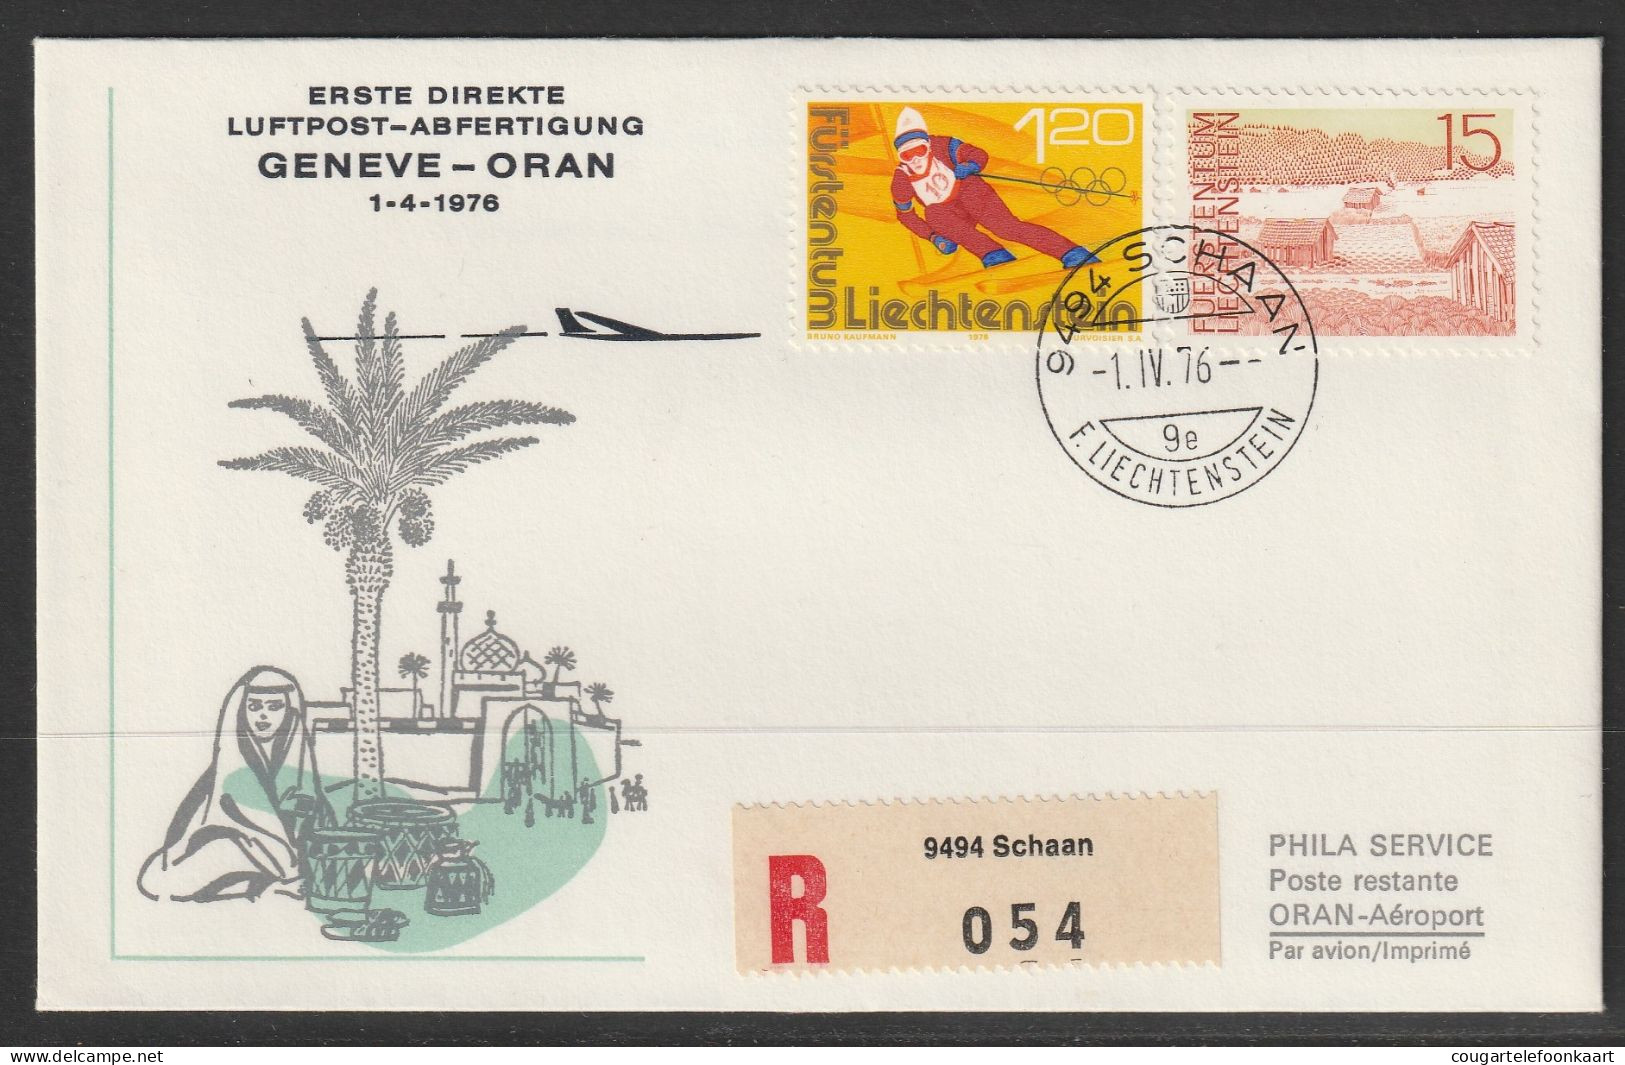 1976, Erste Direkte Luftpost-Abfertigung, Liechtenstein - Oran Alger Algiers - Luchtpostzegels